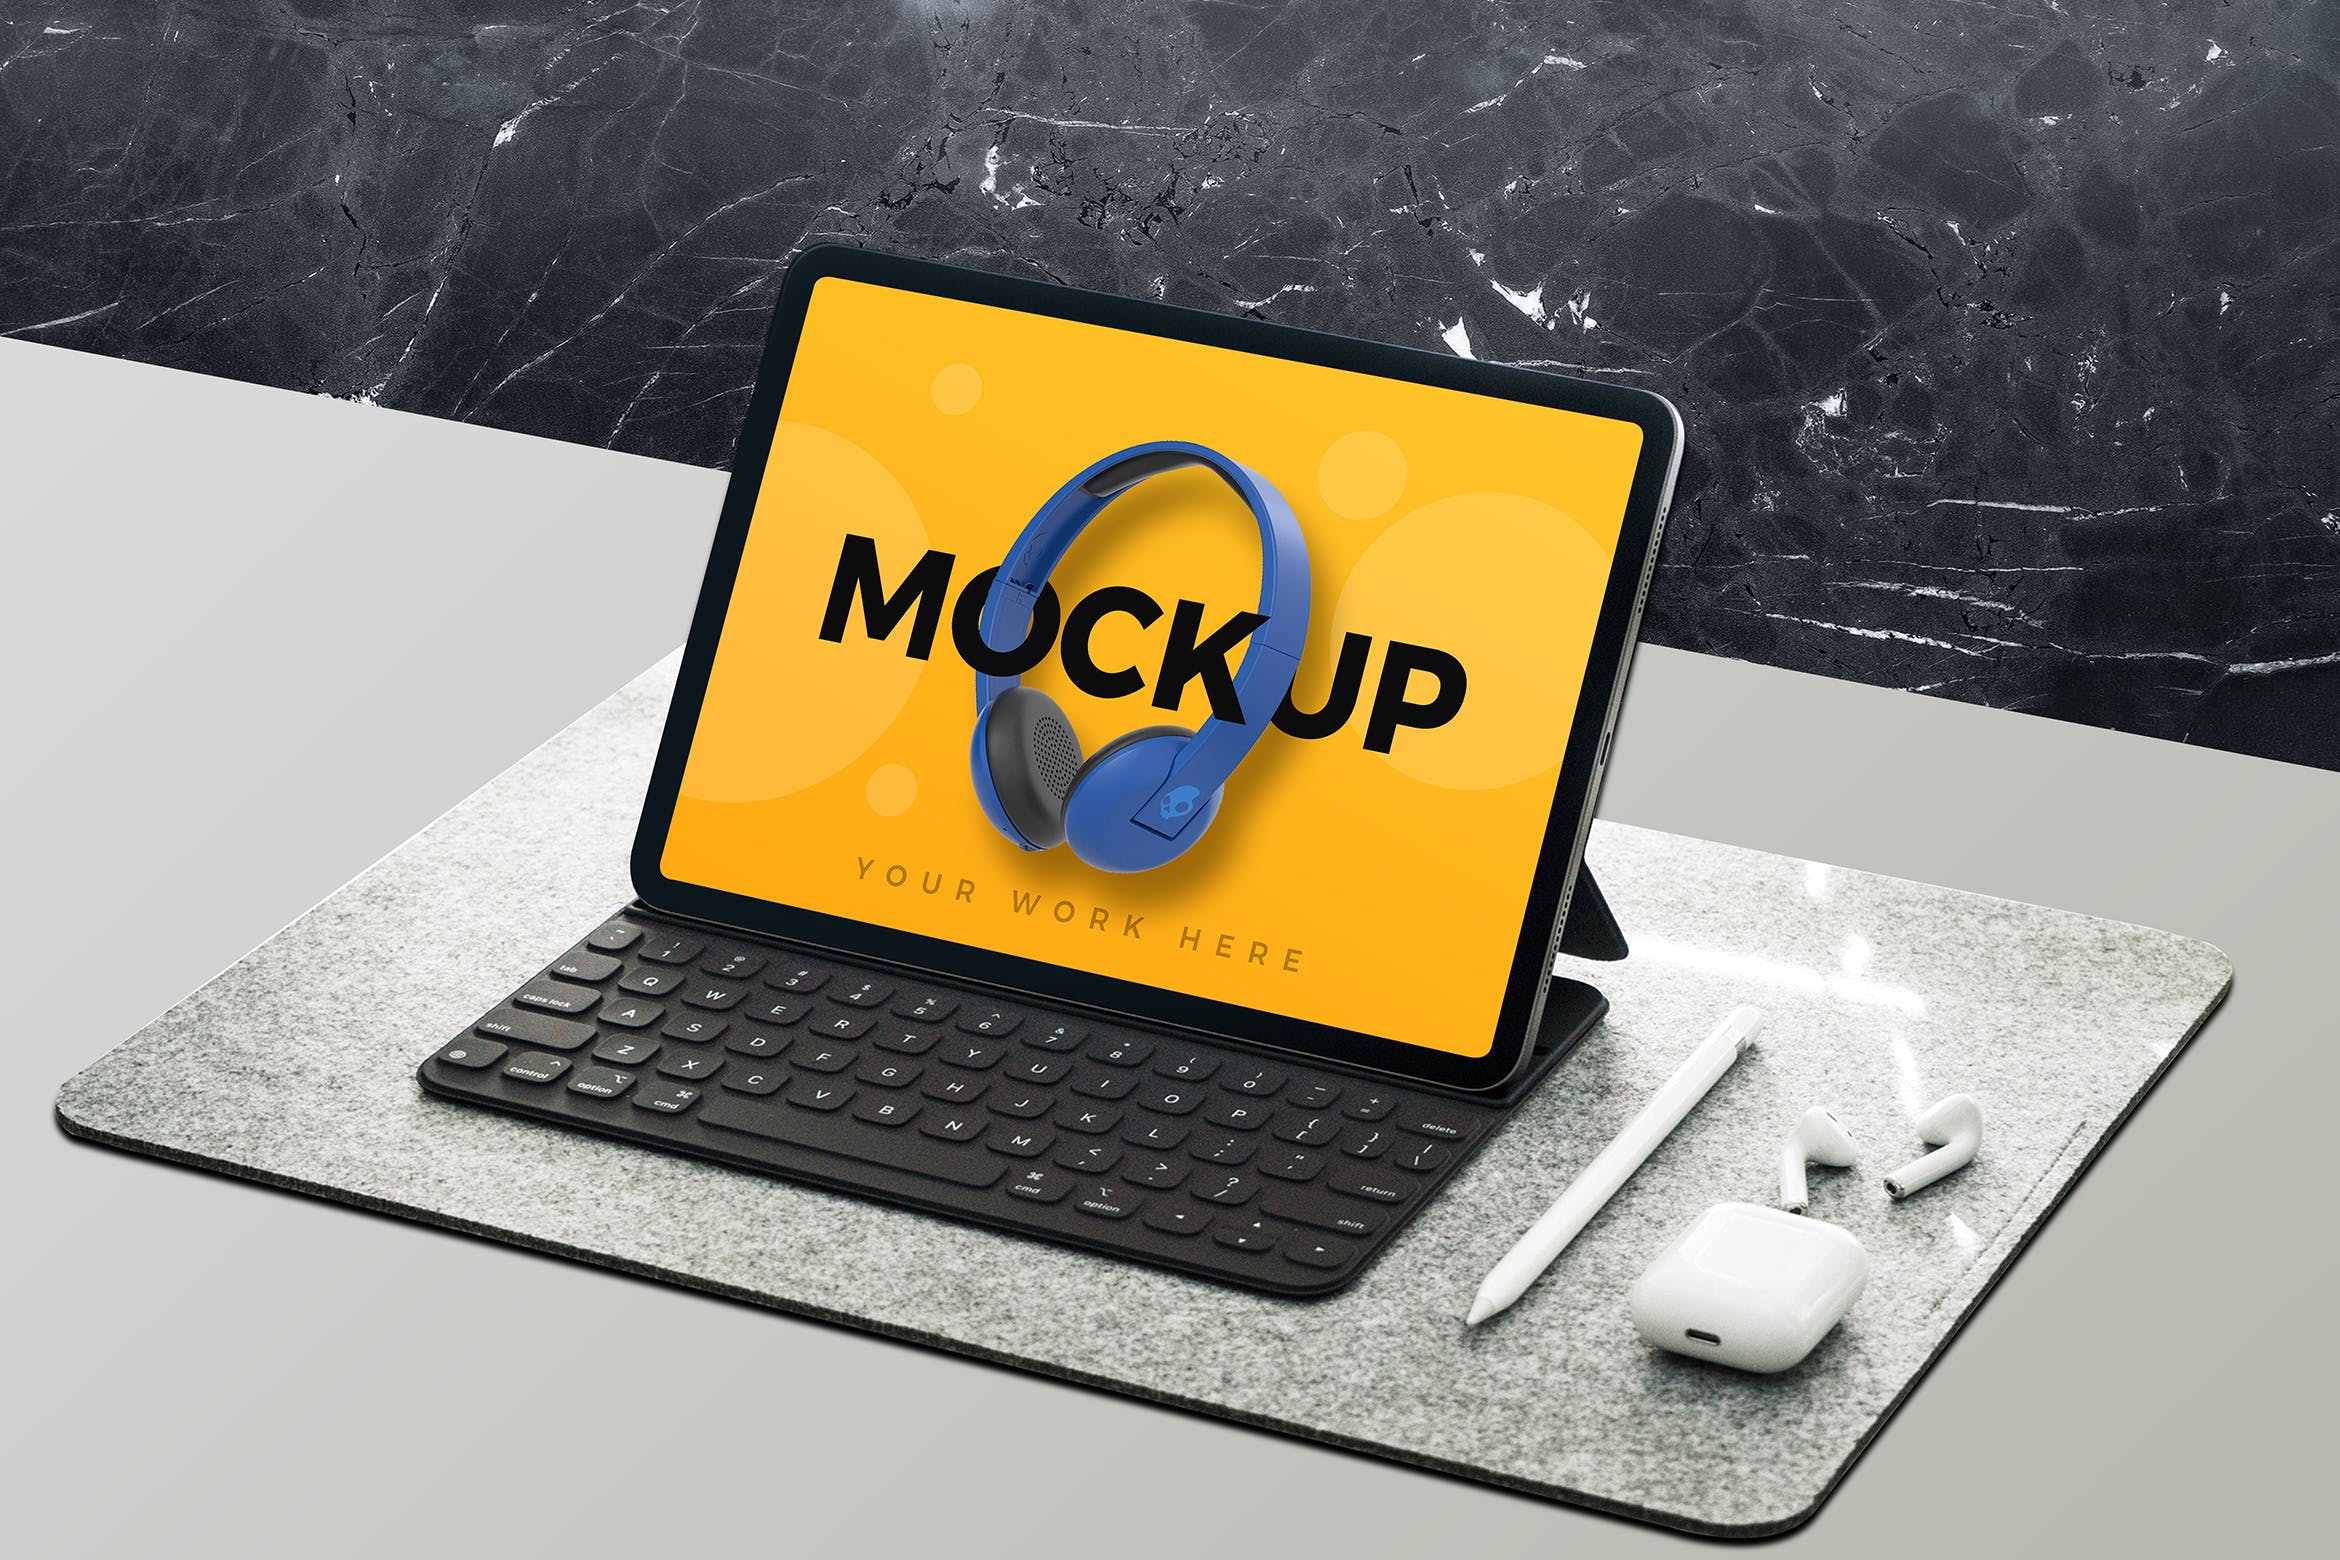 平板电脑屏幕预览设计图第一素材精选样机 Tablet Mockup插图